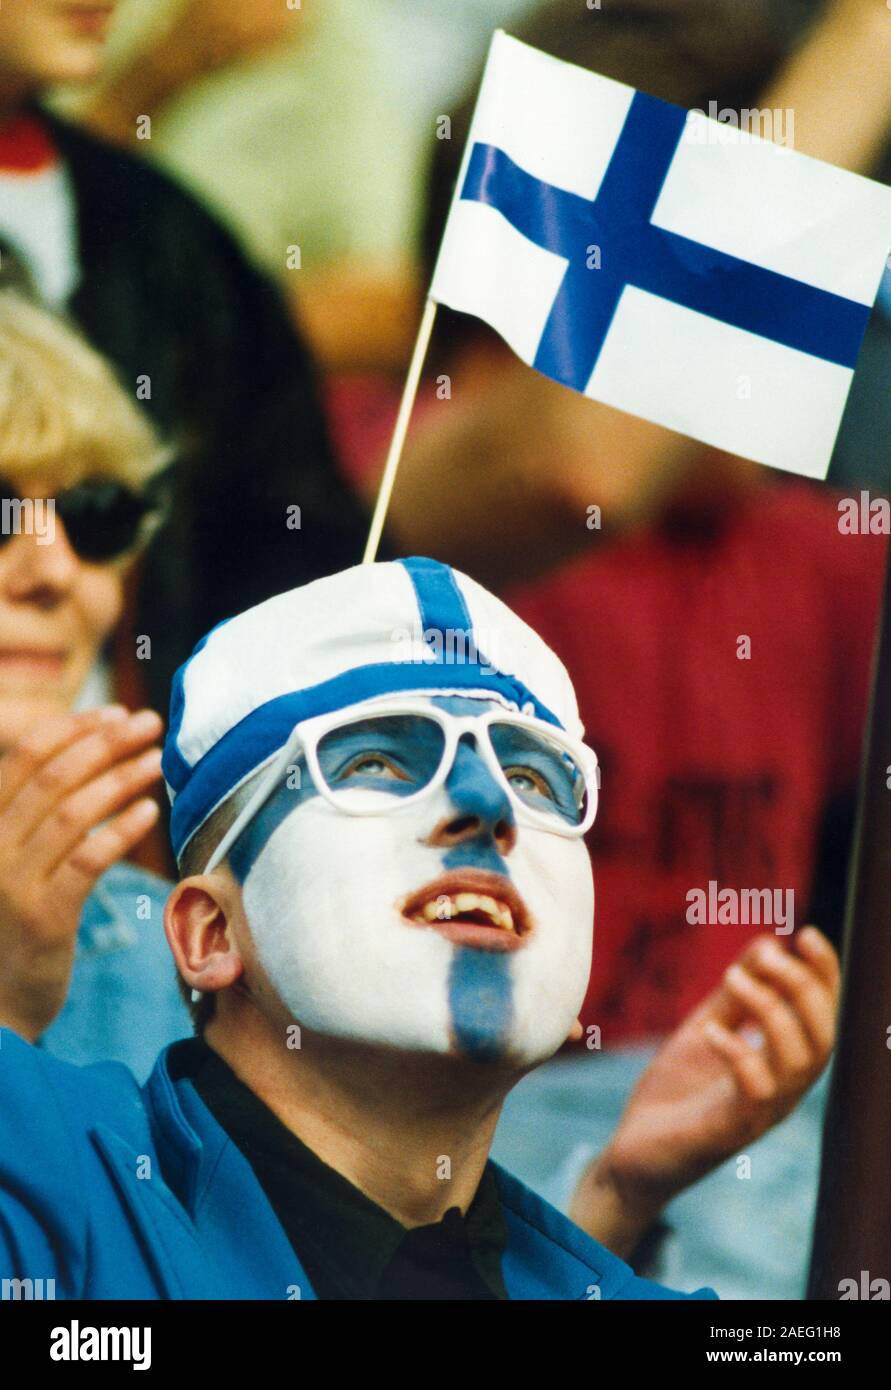 Sostenitore di atletica durante i cittadini tra la Svezia e la Finlandia in atletica leggera Foto Stock